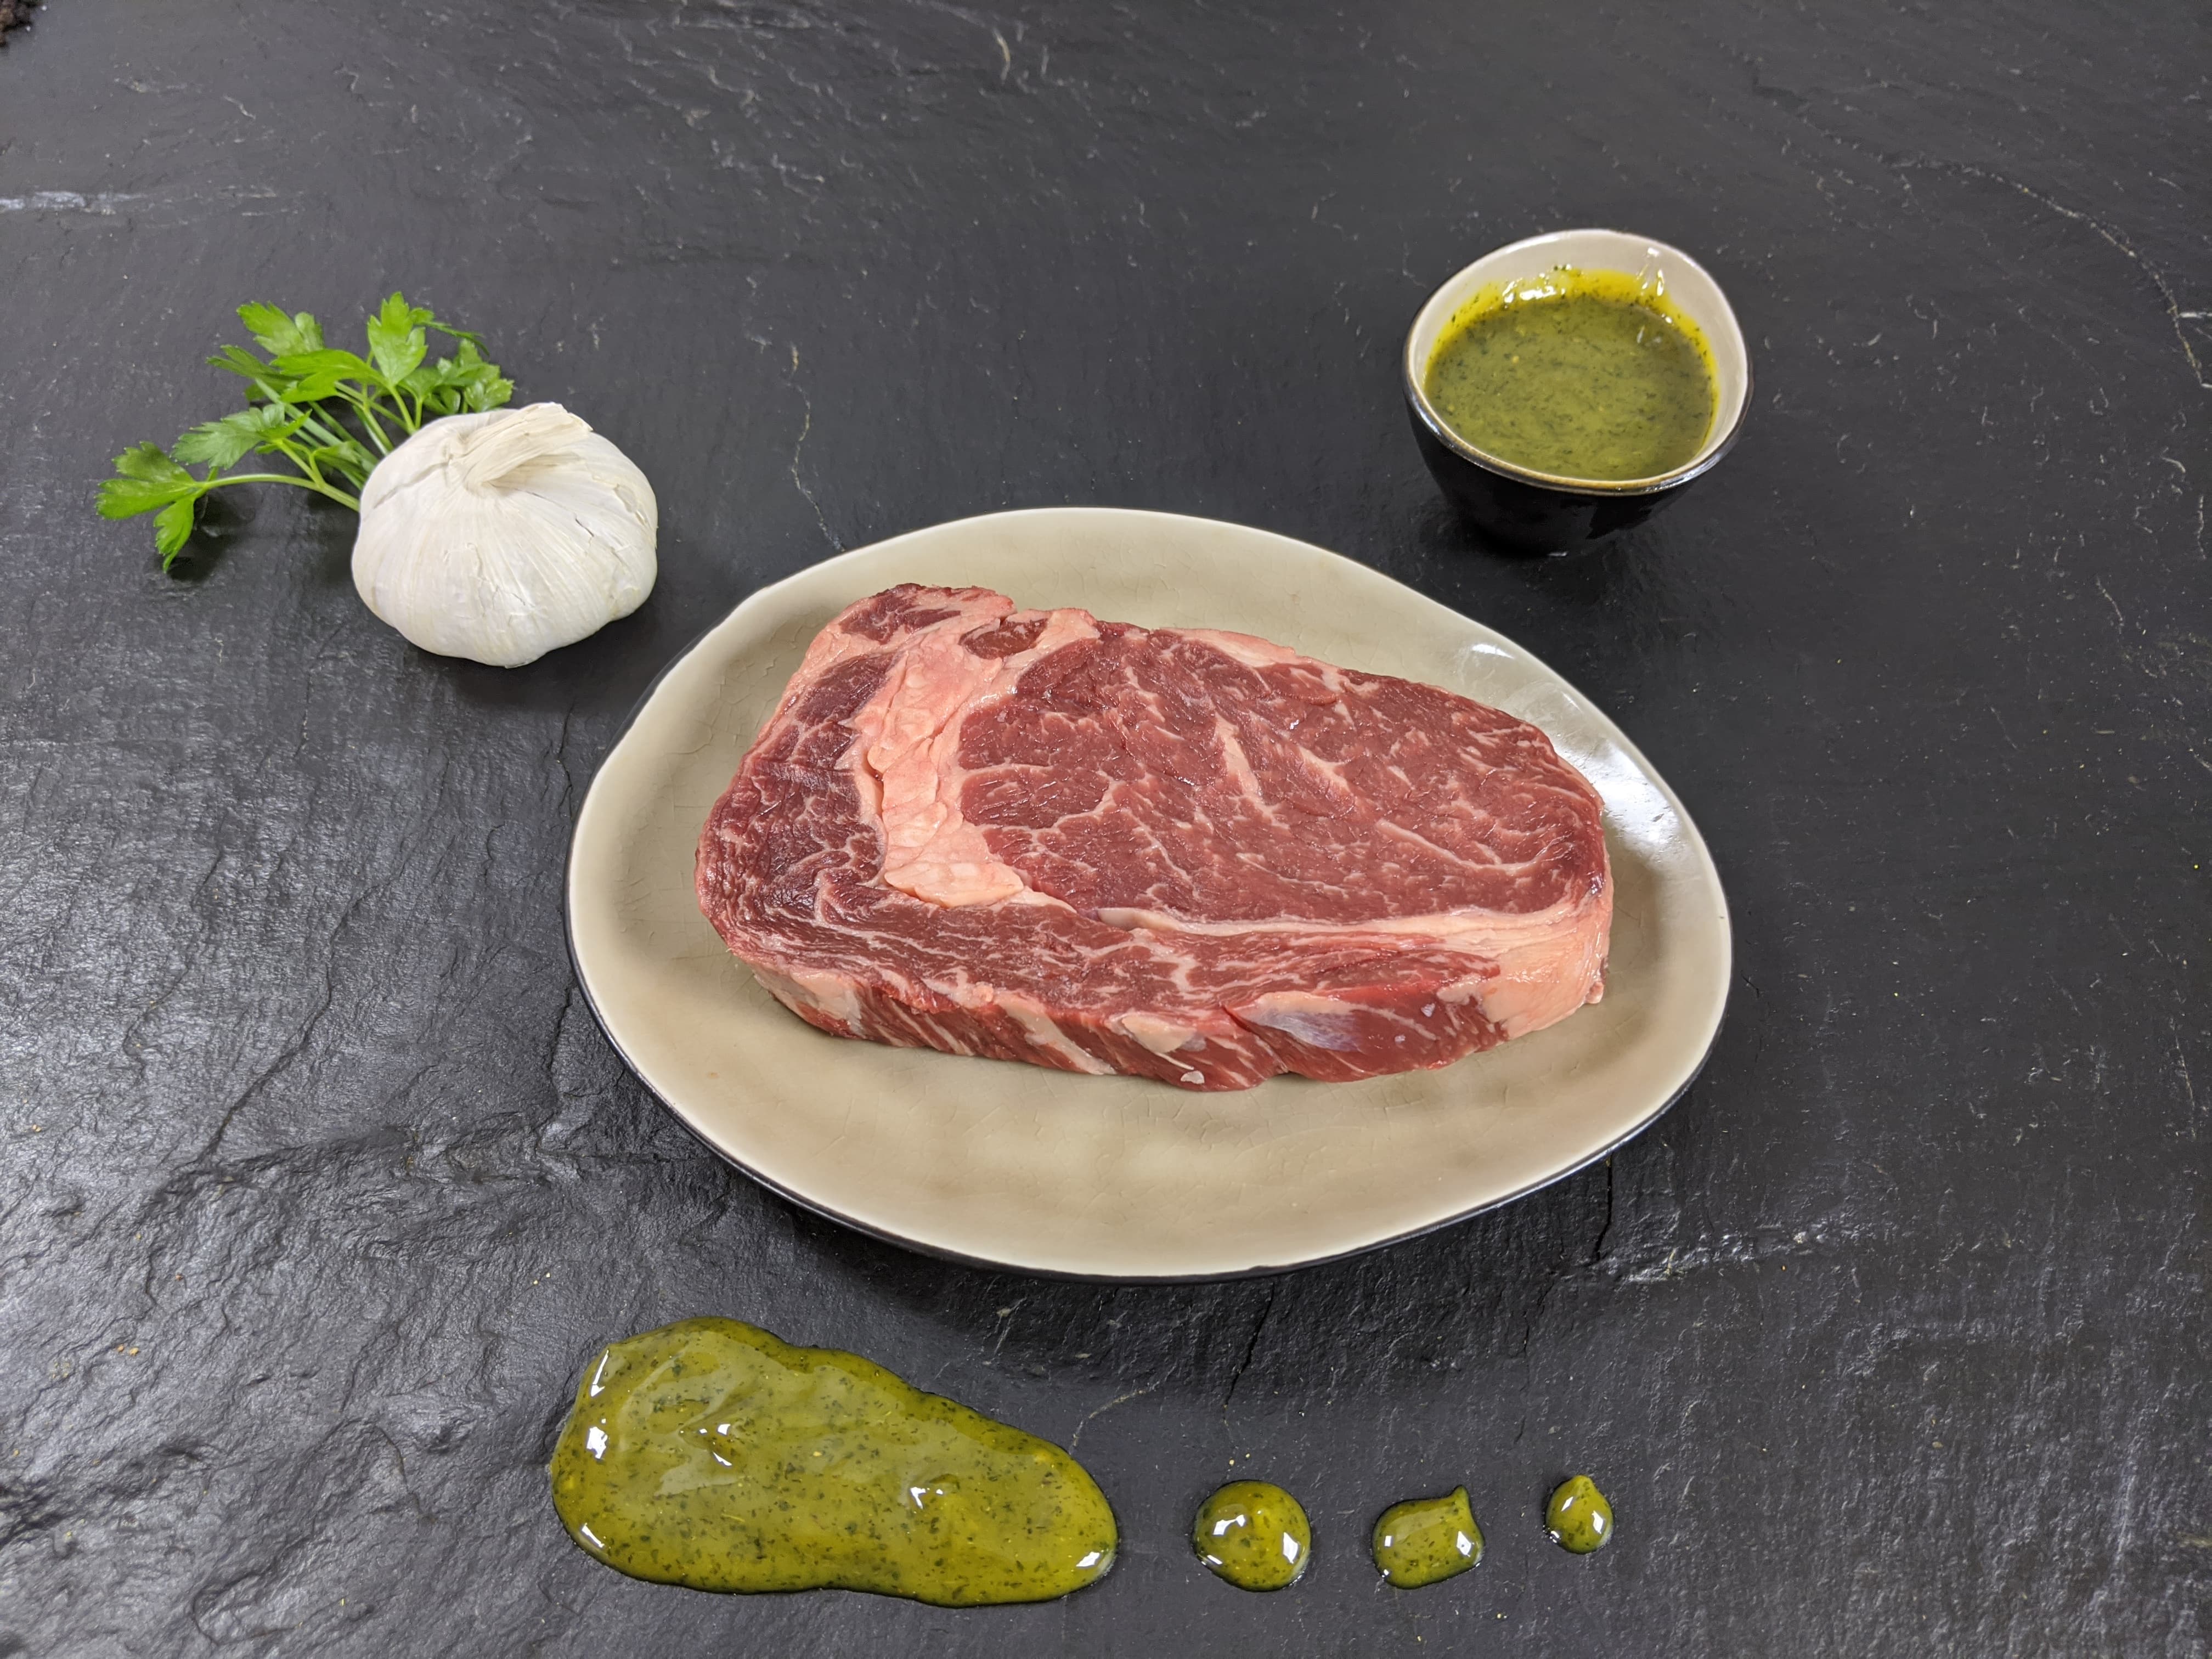 Your Steak - Entrecôte Kräuter-Knoblauch | Steak Konfigurator ...